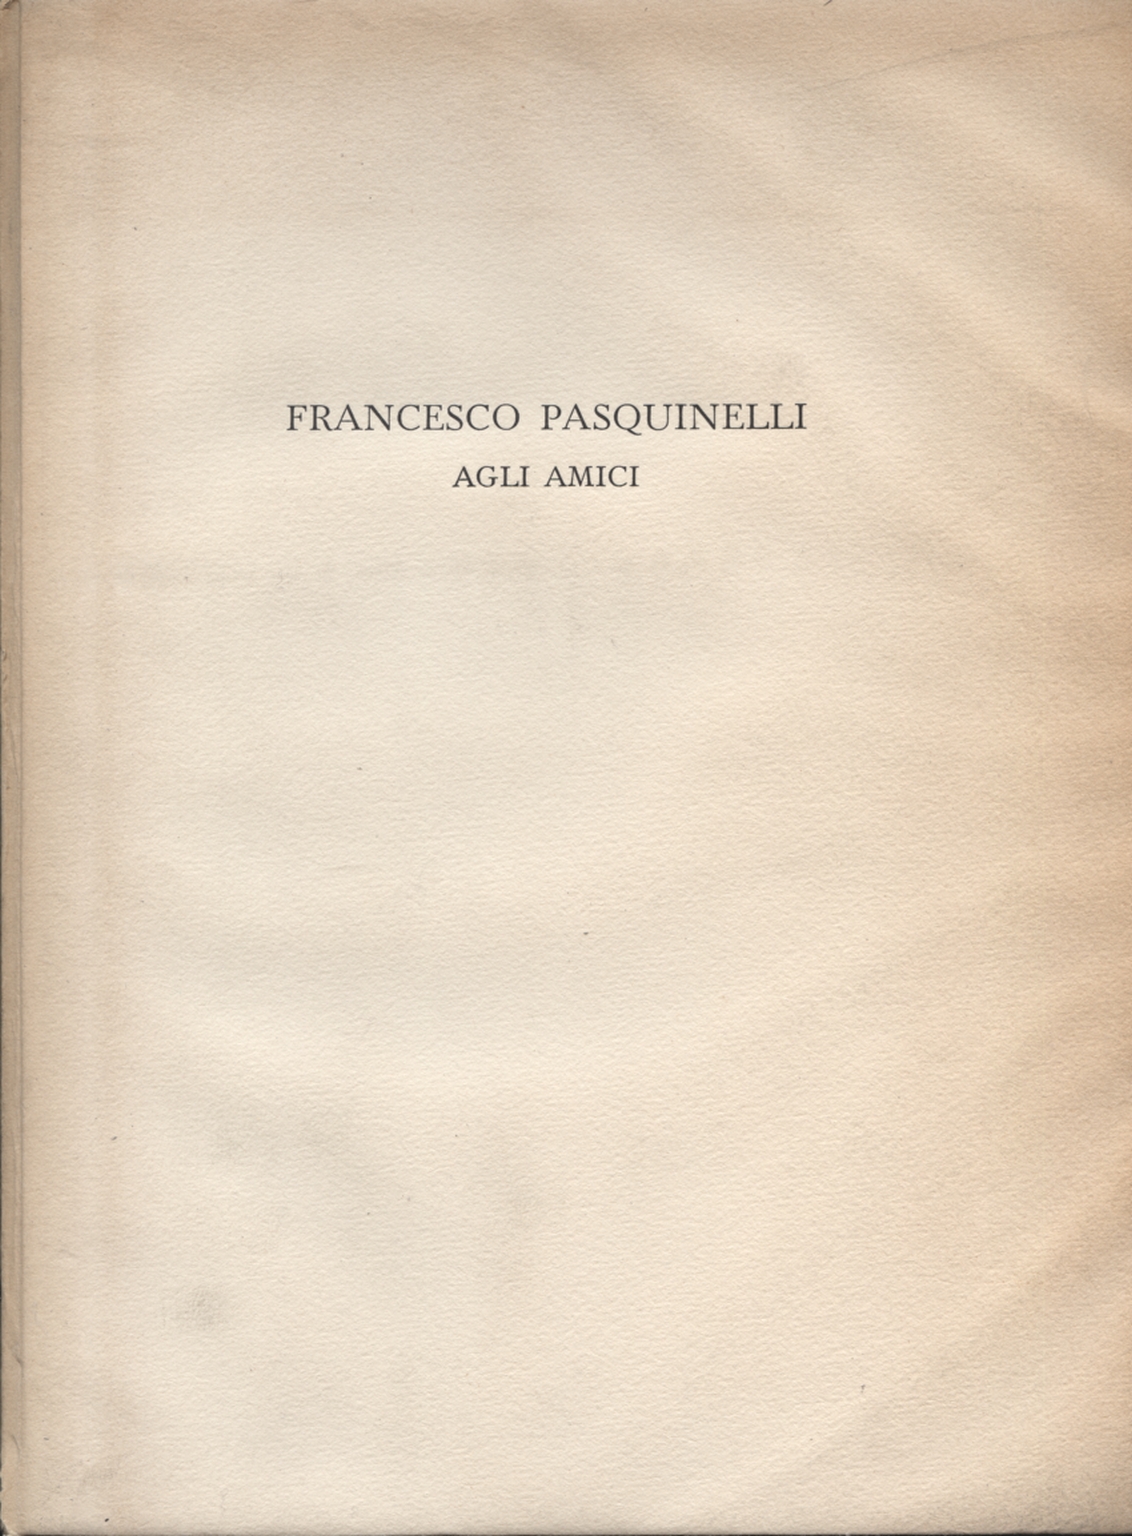 Francesco Pasquinelli agli amici, Francesco Pasquinelli